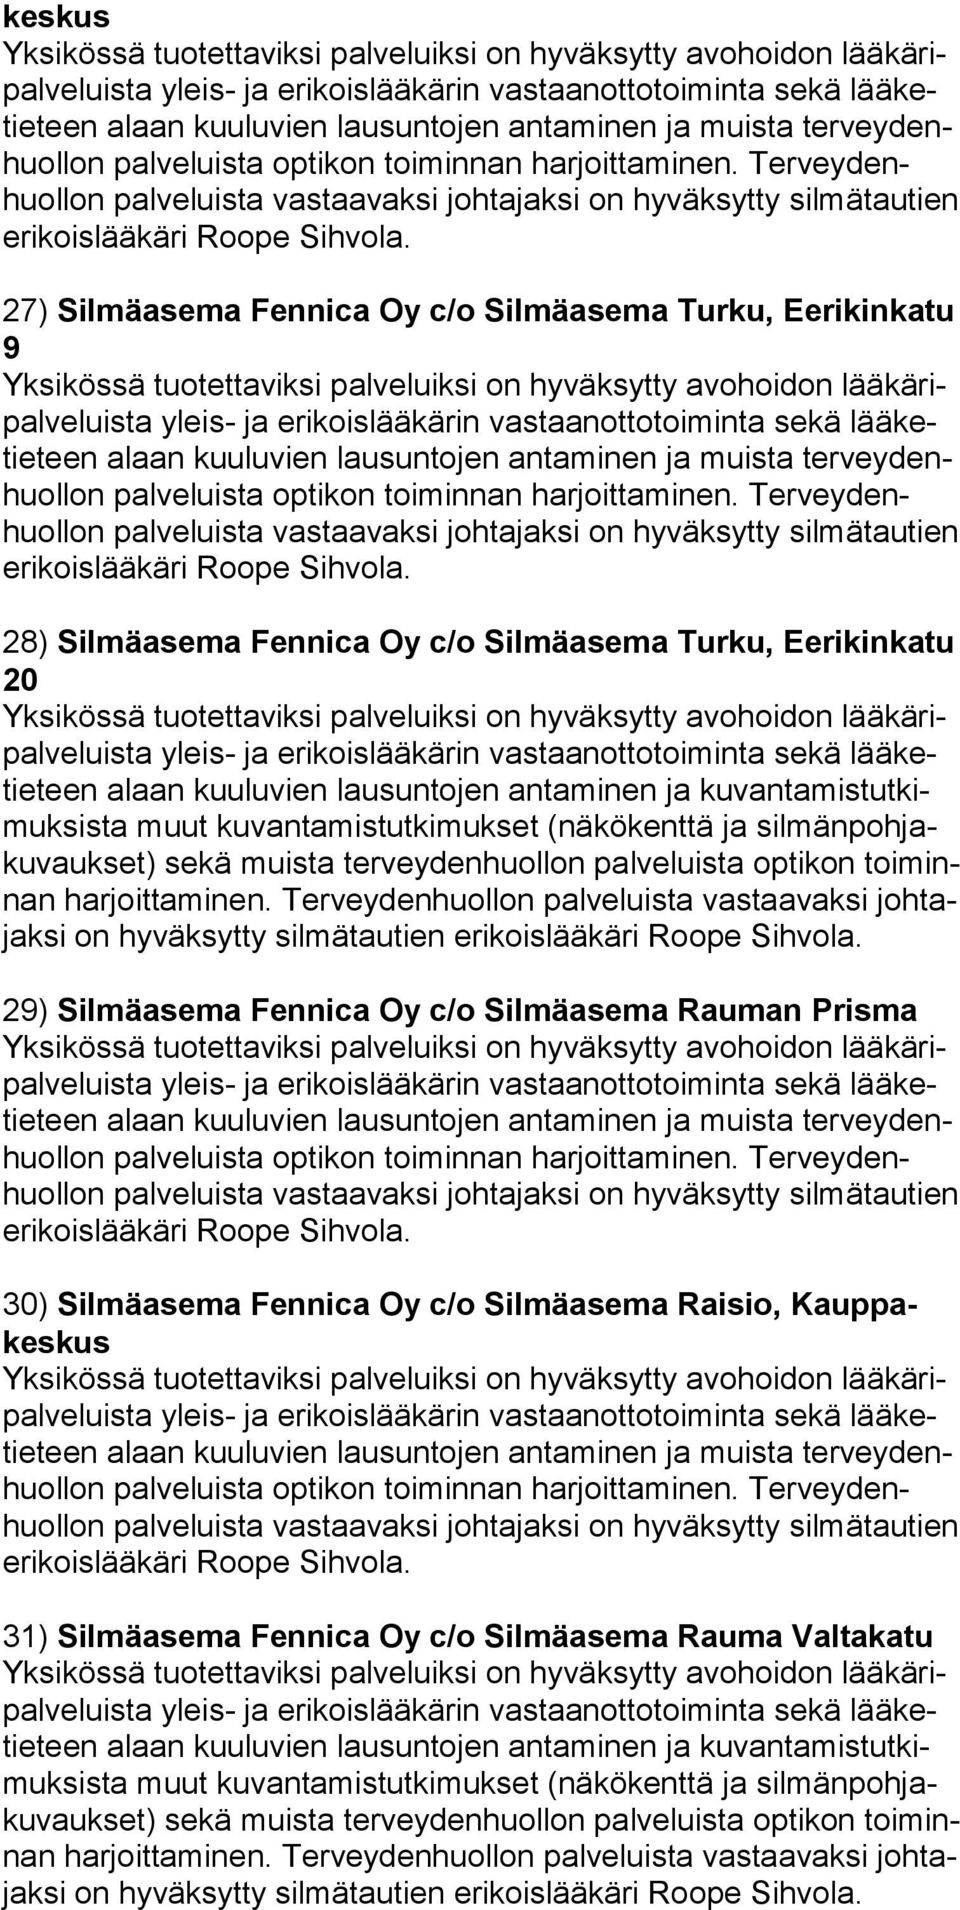 Terveydenhuollon 28) Silmäasema Fennica Oy c/o Silmäasema Turku, Eerikinkatu 20 teen alaan kuuluvien lausuntojen antaminen ja kuvantamistutkimuk sista muut kuvantamistutkimukset (näkökenttä ja